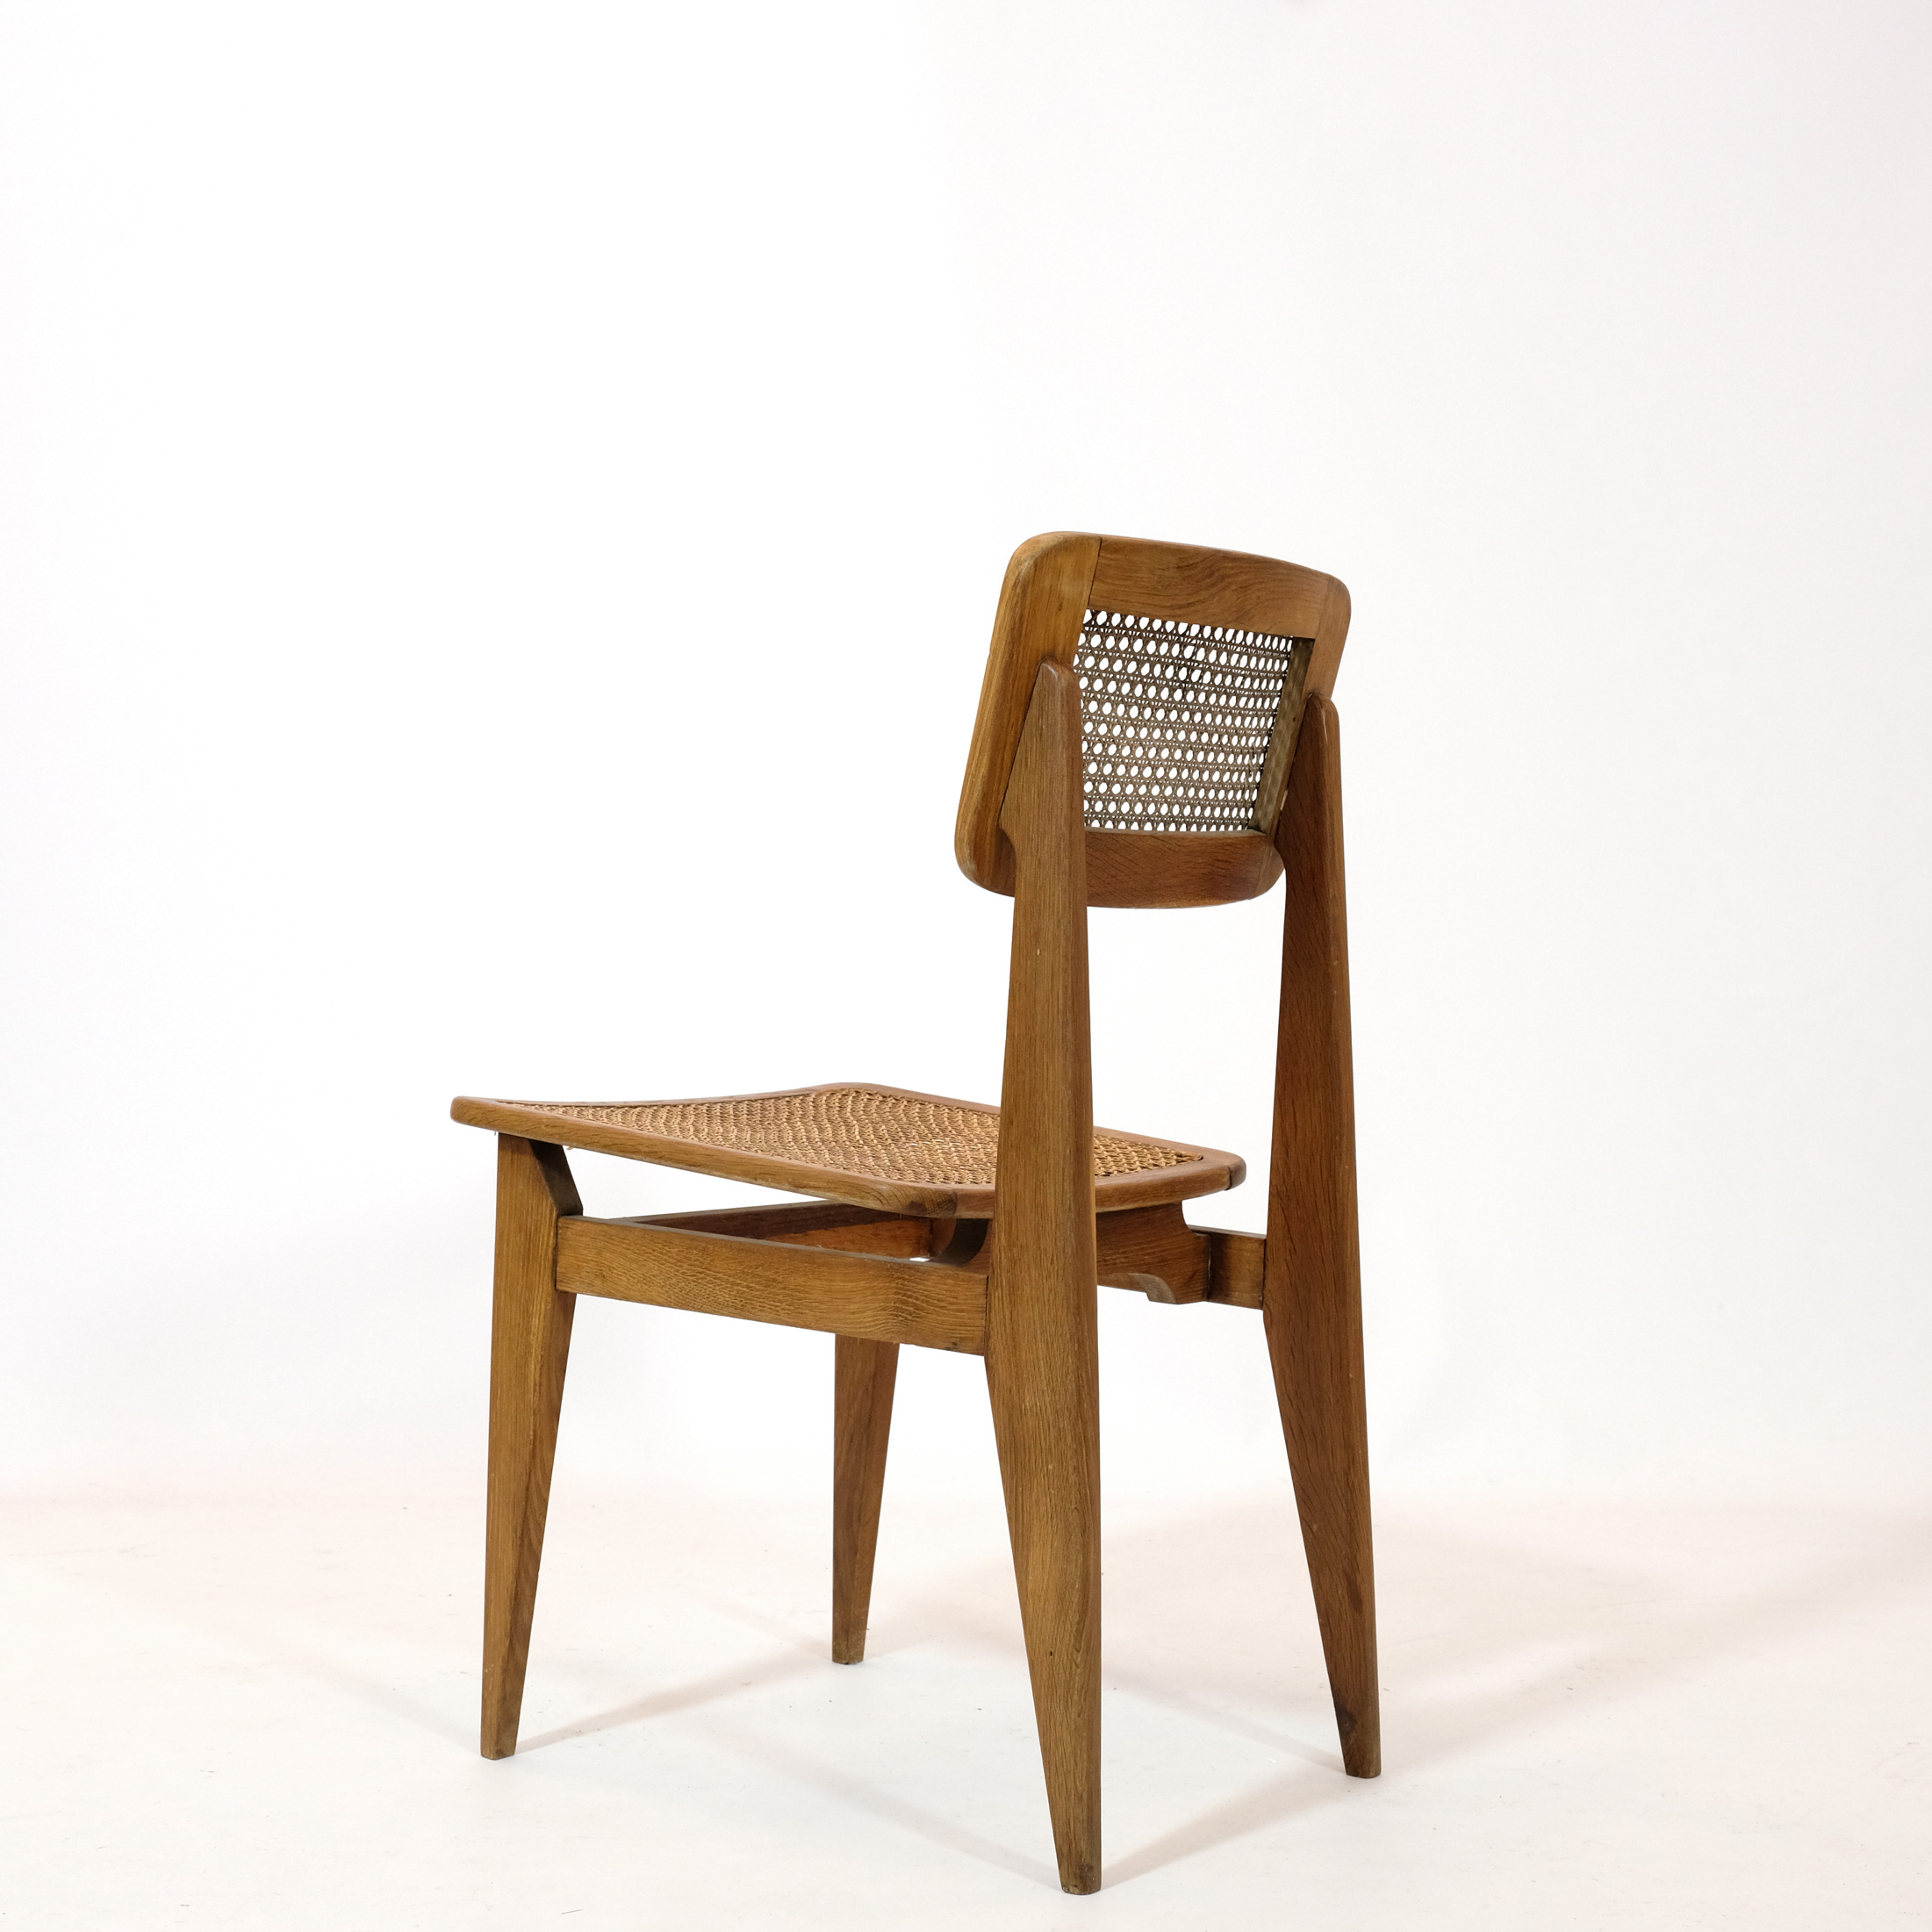 C cane chair, Marcel Gascoin,ARHEC, 1950's.